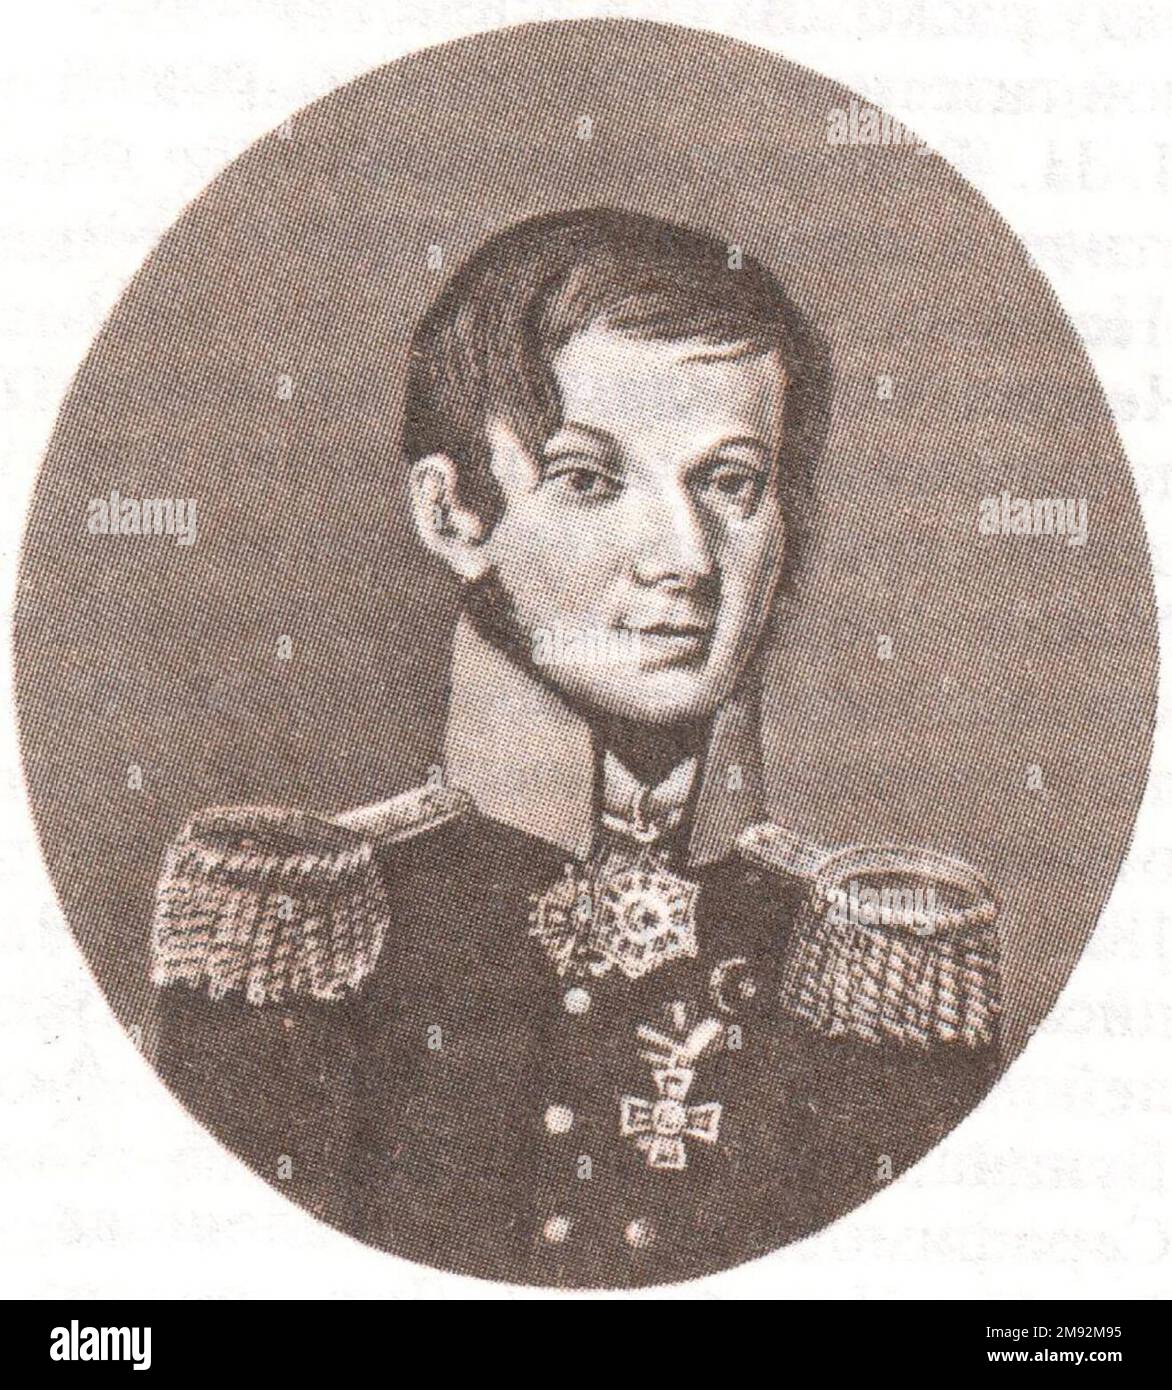 Alexander Grigoryevitch Krasnokutsky - général majeur, participant à la guerre patriotique de 1812 et des campagnes étrangères de 1813-1814, auteur de Voyage essais ca. vers 1820 Banque D'Images